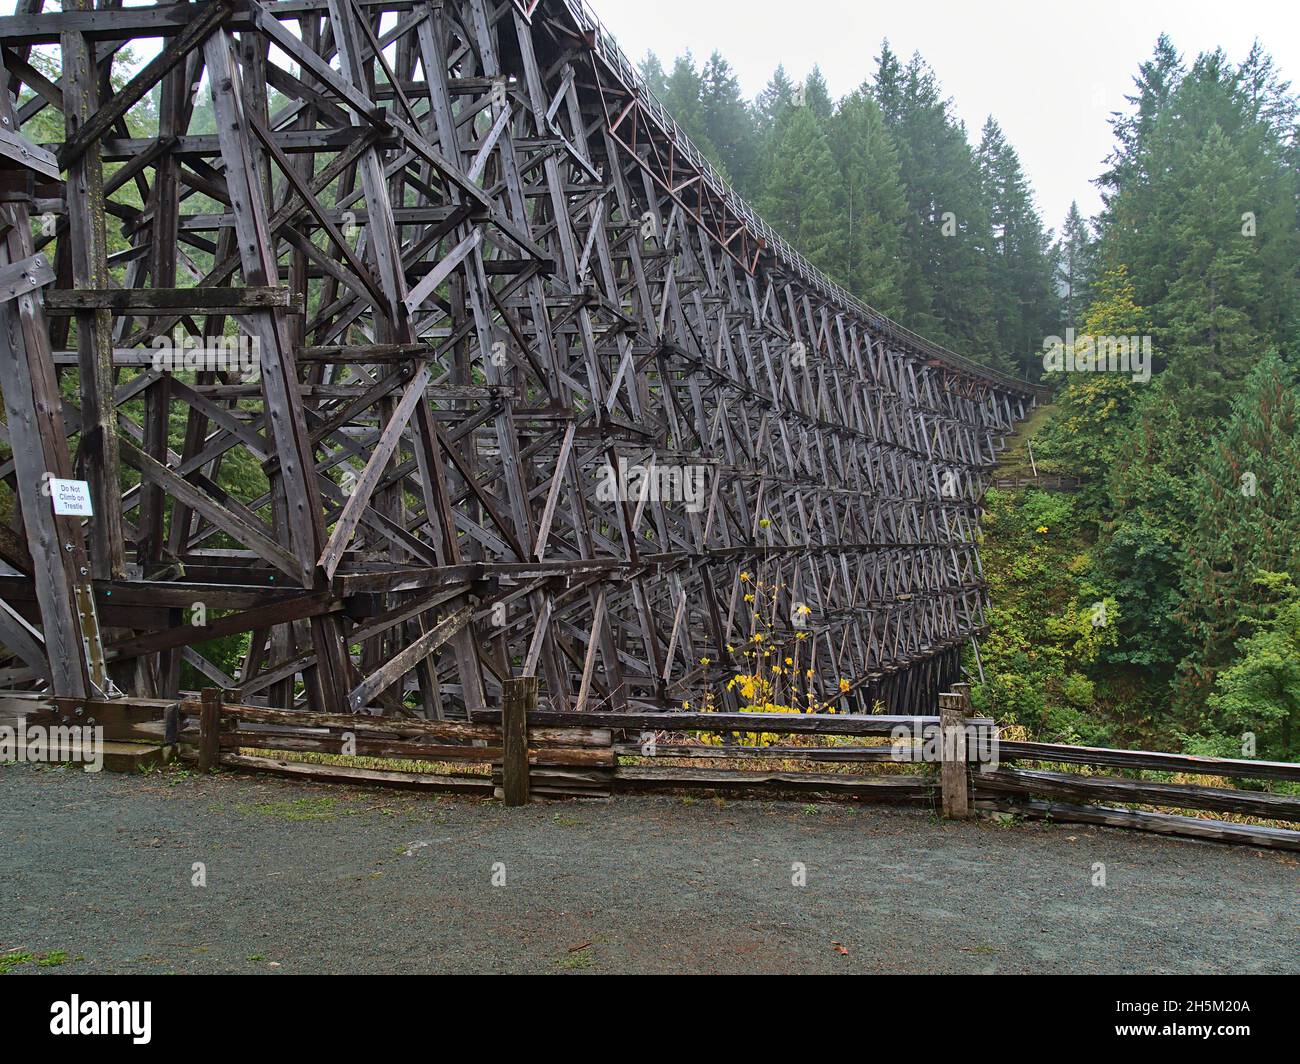 Vue sur le pont de chemin de fer historique restauré Kinsol Trestle, en bois entouré d'une forêt dense sur l'île de Vancouver, Colombie-Britannique, Canada. Banque D'Images